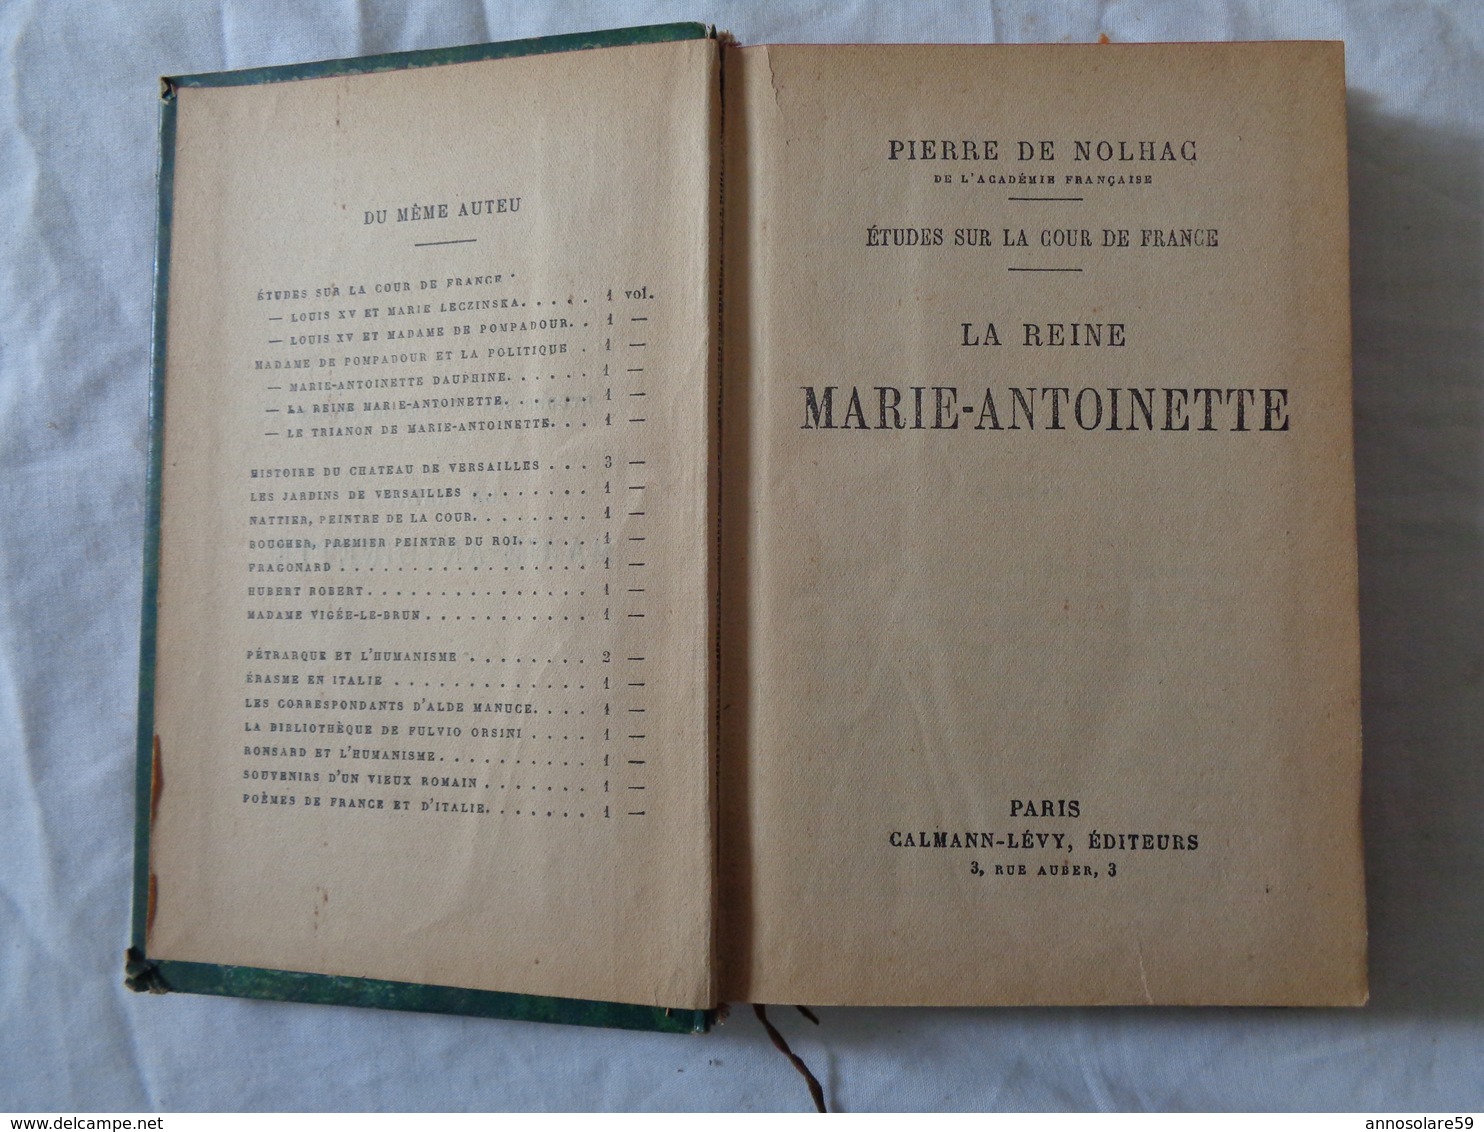 LIBRO D'EPOCA 1926 - PIERRE DE NOLHAC DE L'ACADEMIE FRANCAISE (LA REINE MARIE-ANTOINETTE) - LEGGI - Law & Economics